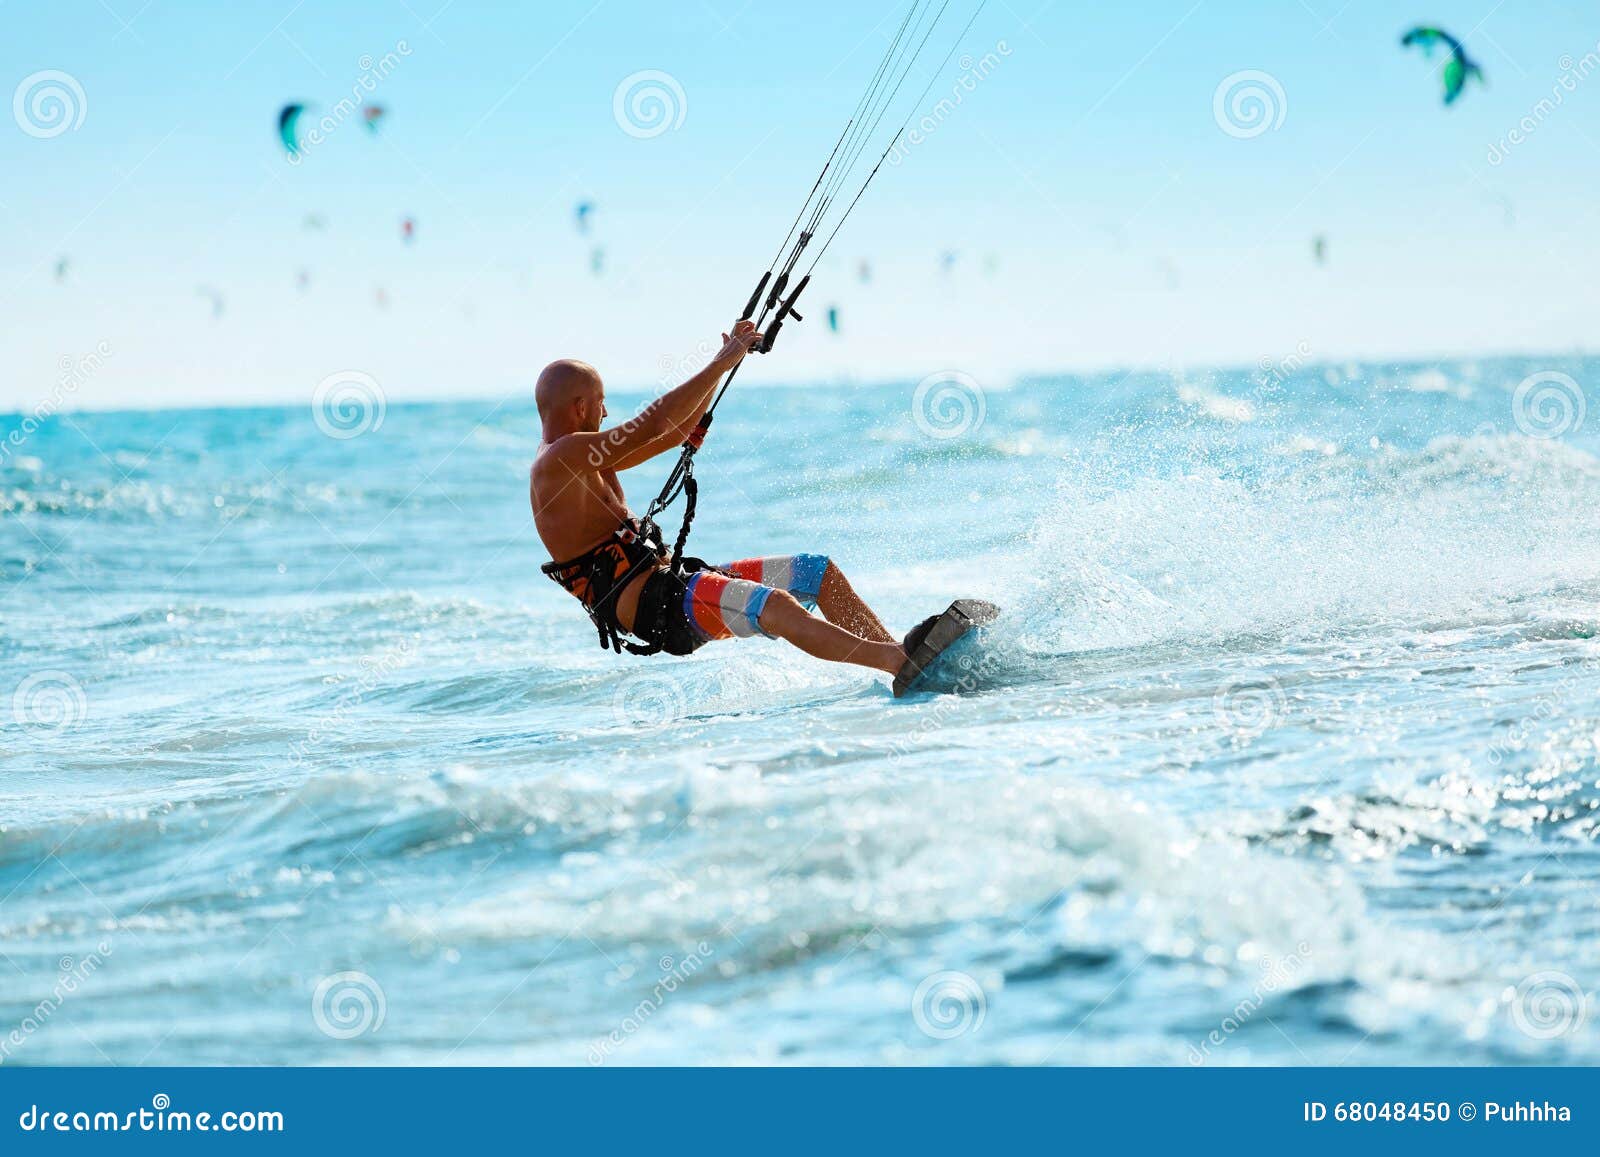 kiteboarding, kitesurfing. water sports. kitesurf action on wave